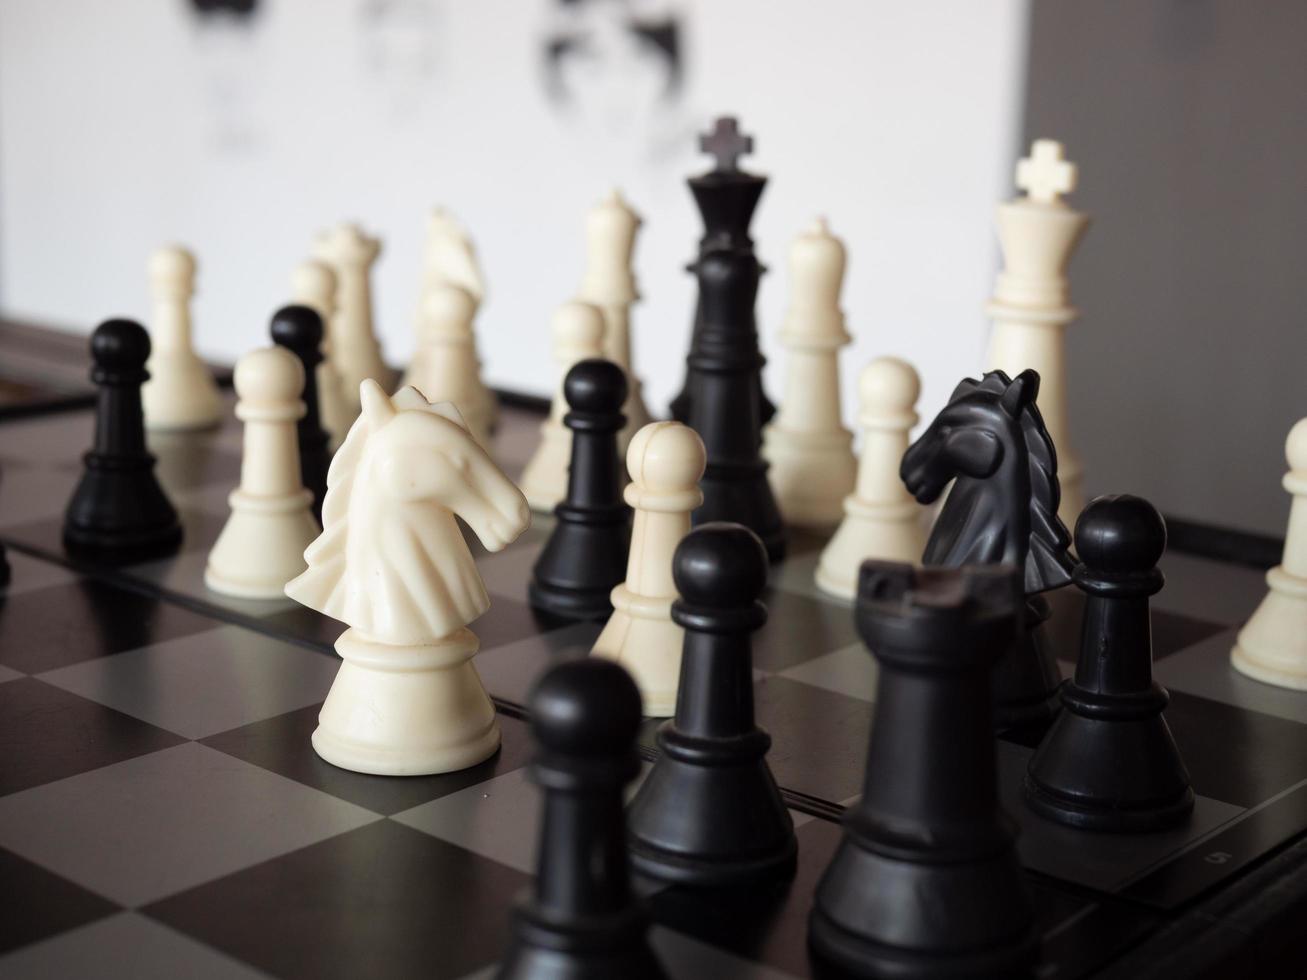 schackbrädspel med fokus på svartvitt foto